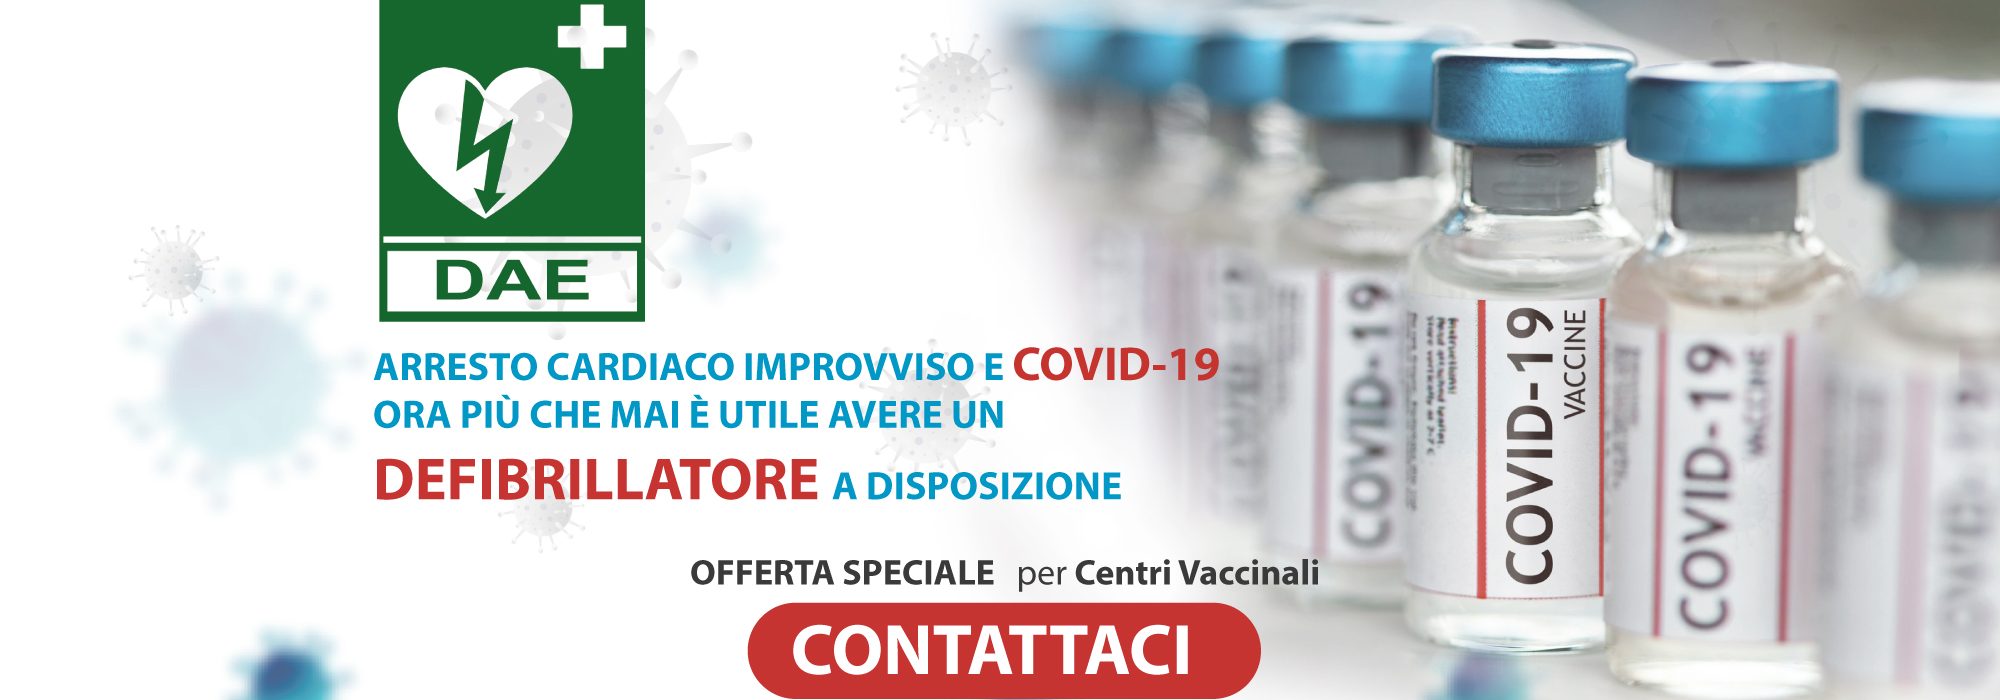 Slide-Vaccino-e-DAE